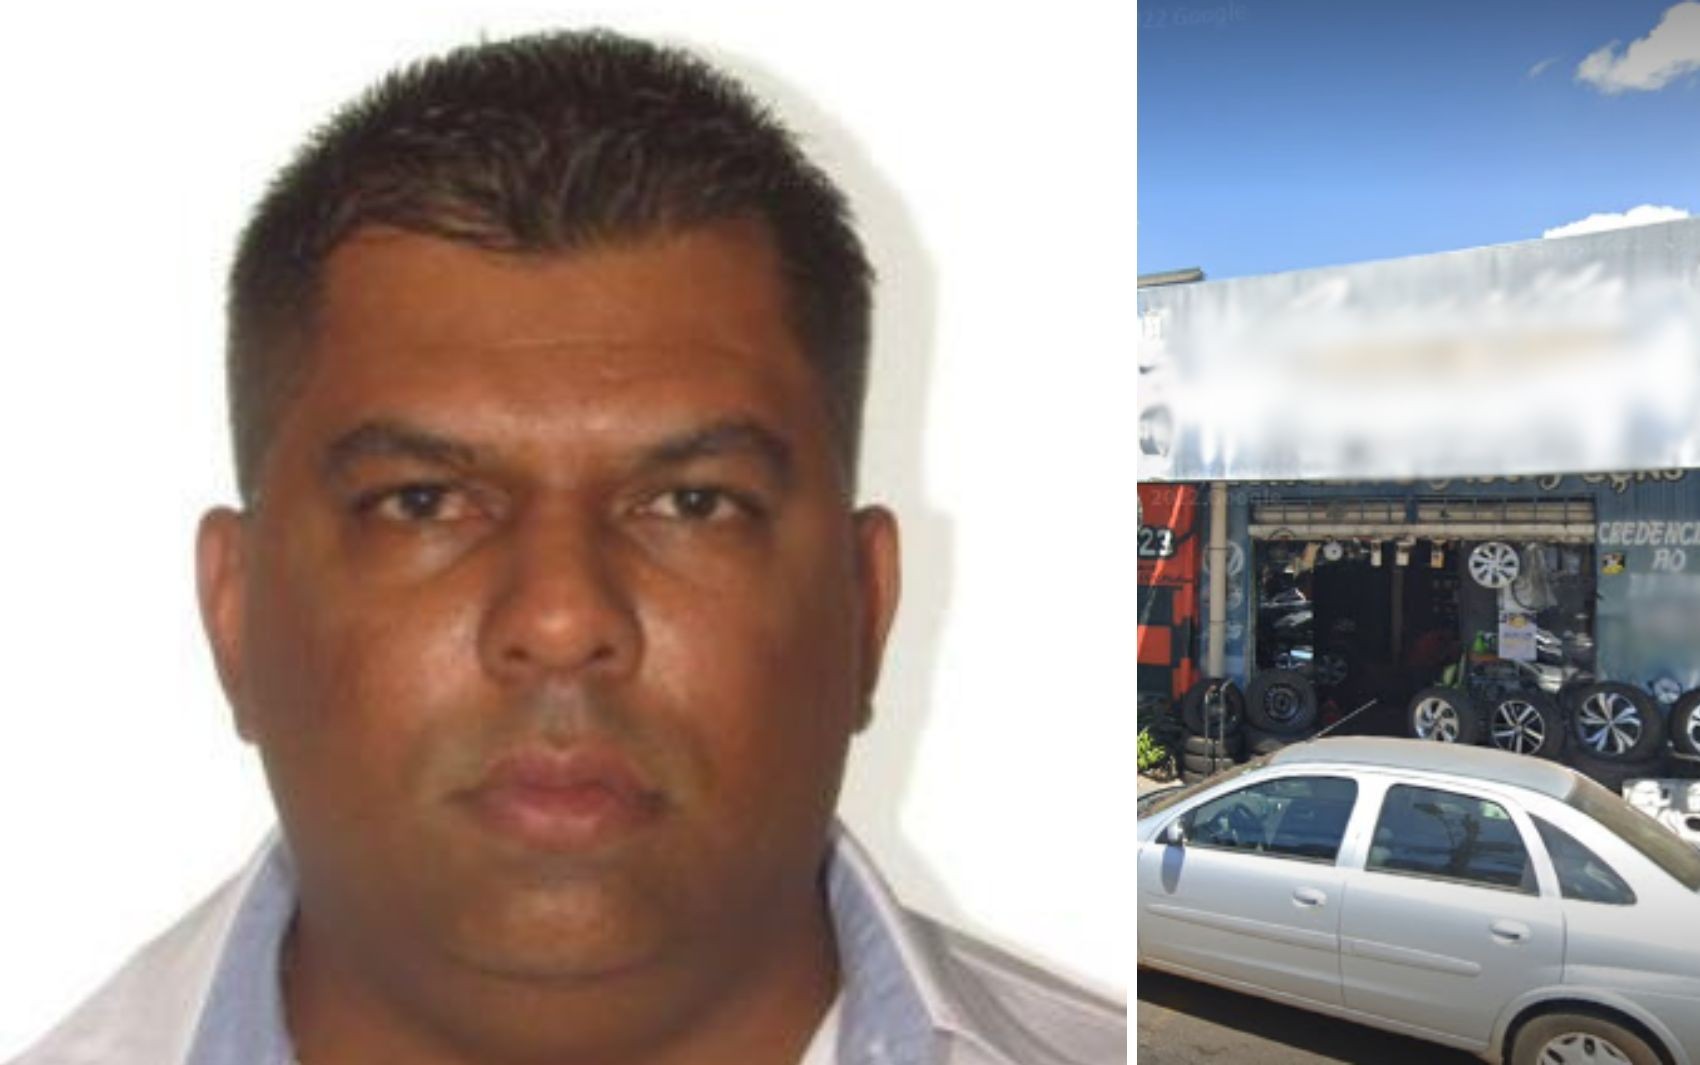 Empresário é morto a tiros após discussão com comerciante de loja concorrente, diz polícia